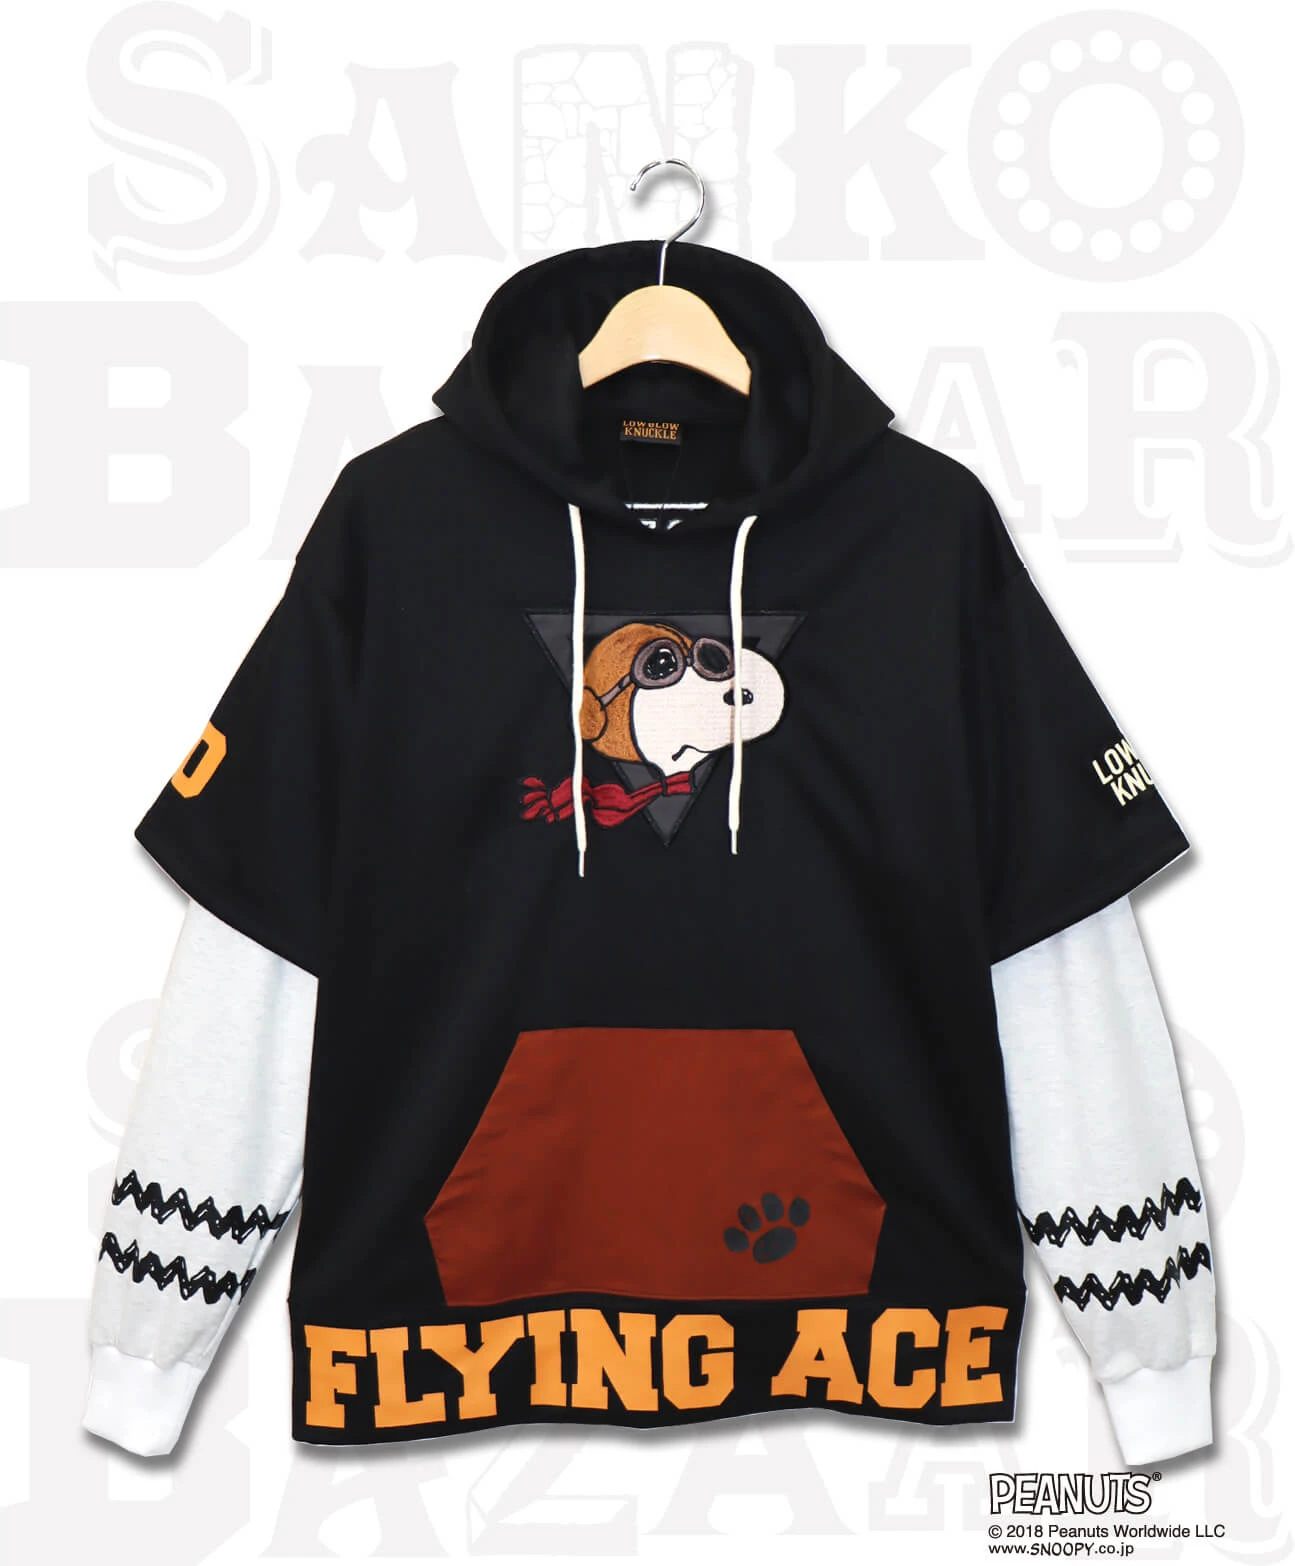 7,650円ウエアハウス ピーナッツSNOOPY FLYING ACE パーカー